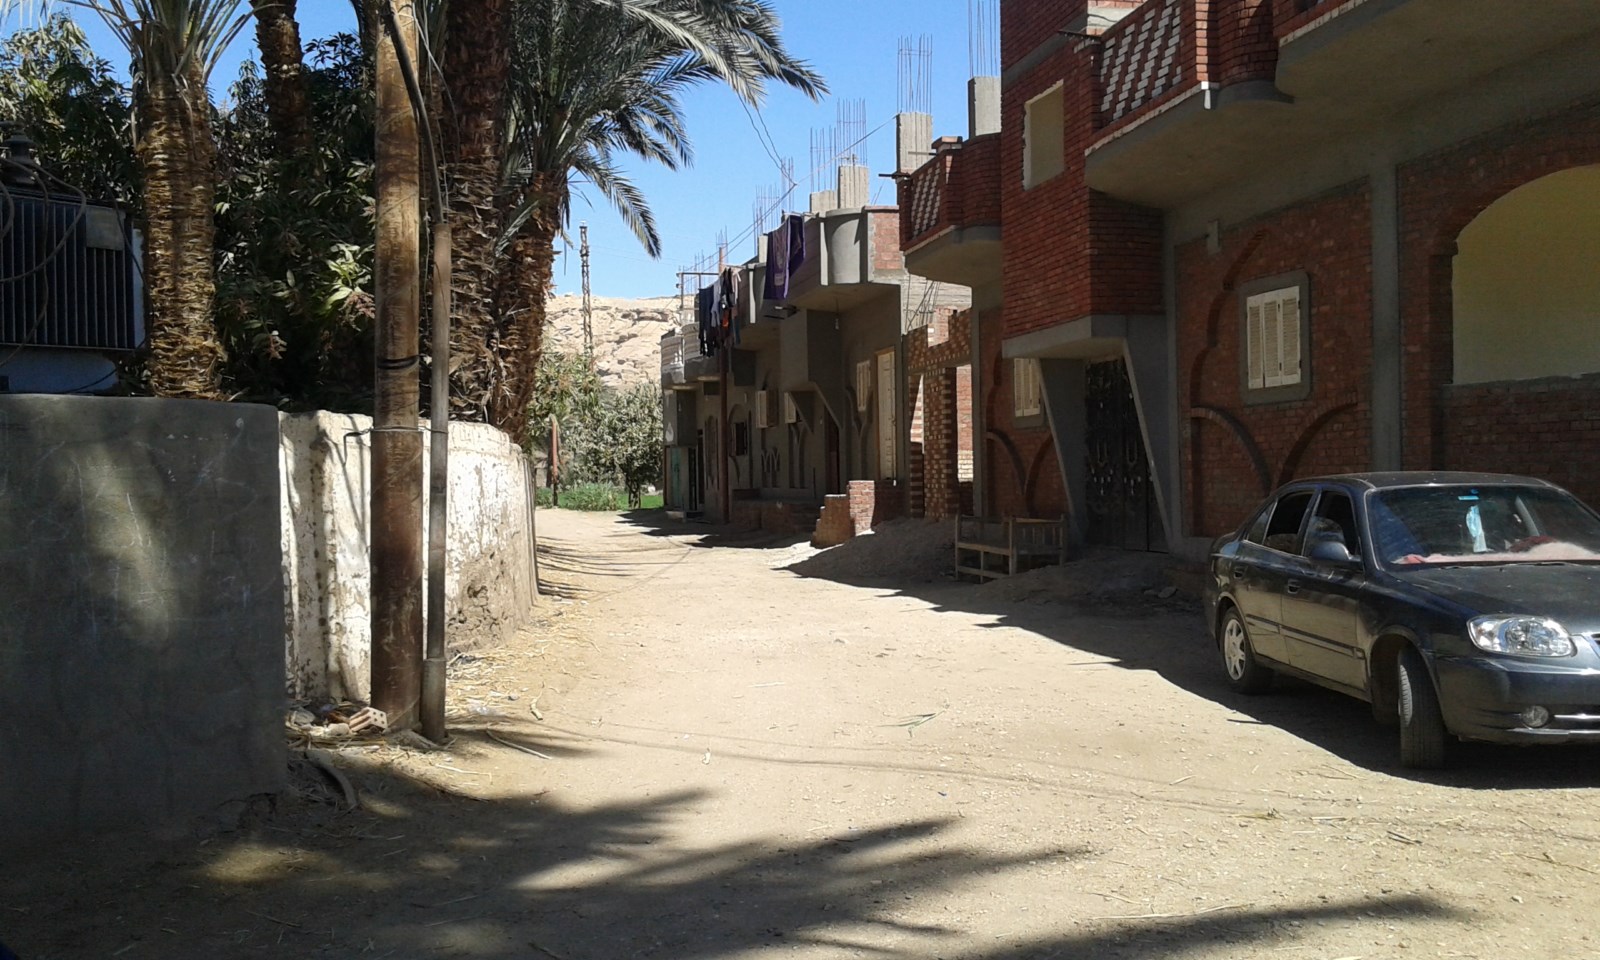 شوارع قرية خور أبو علي الجارى تطويرها ضمن مبادرة حياة كريمة (1)